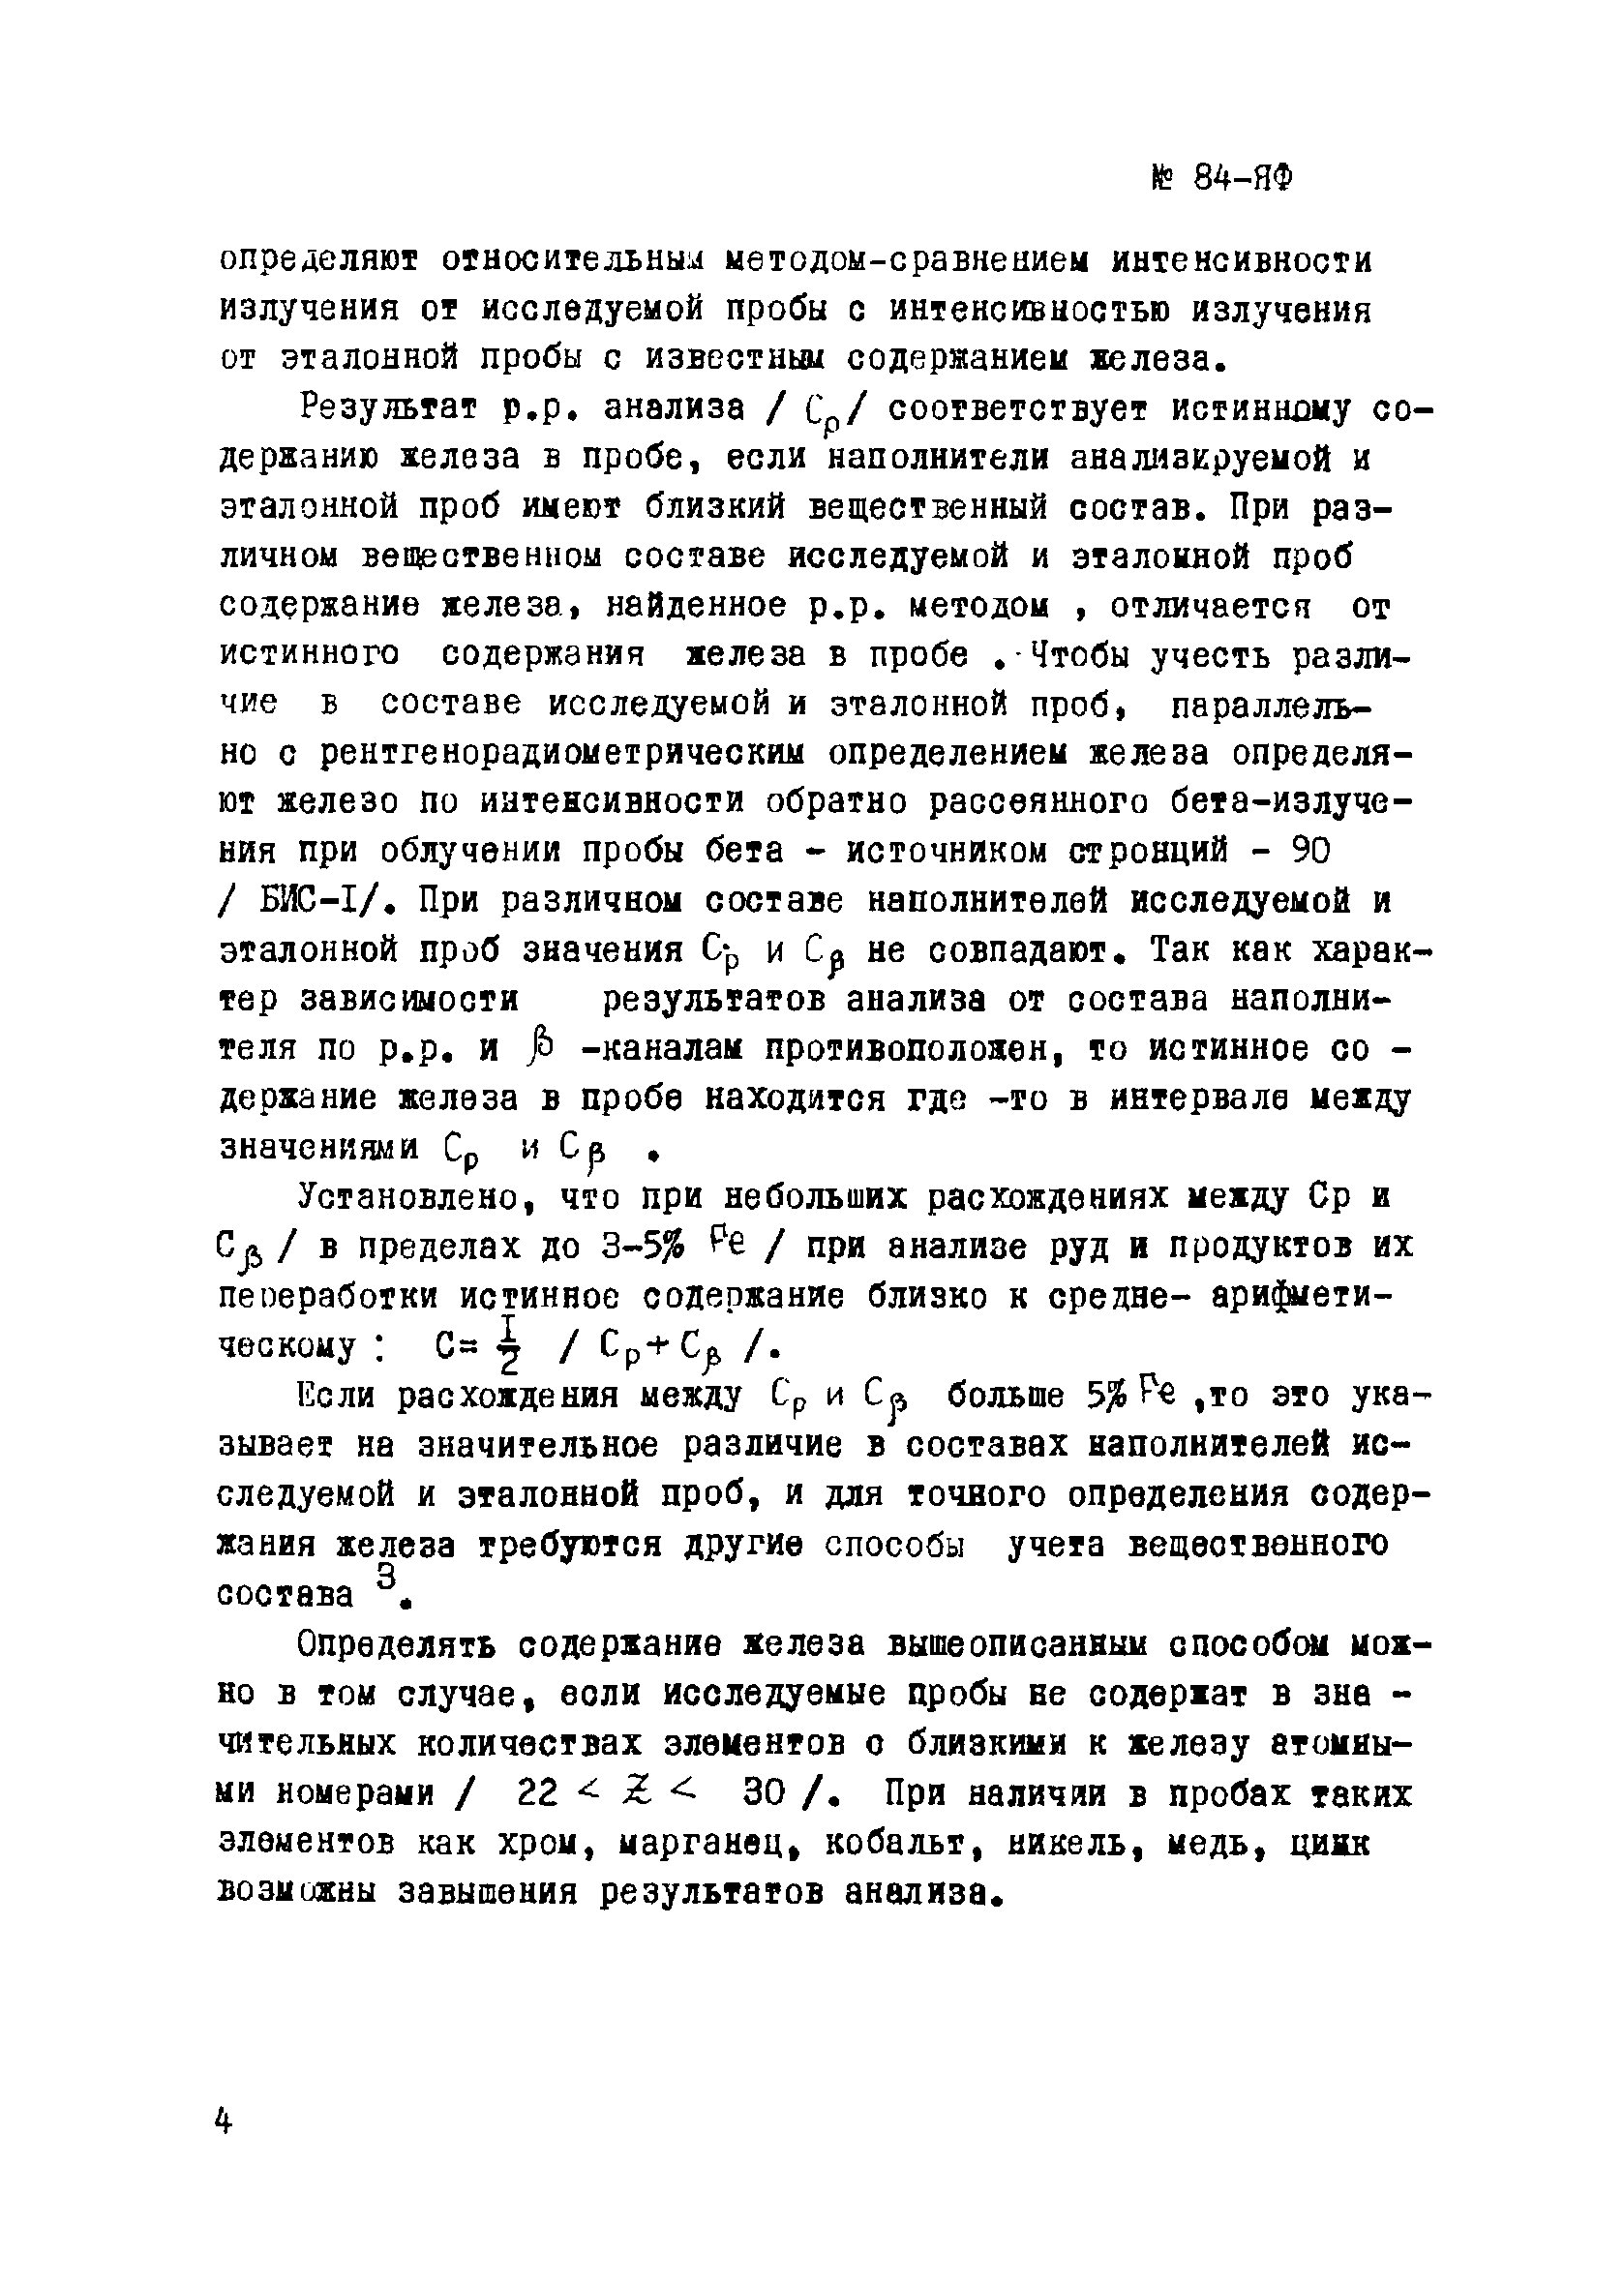 Инструкция НСАМ 84-ЯФ